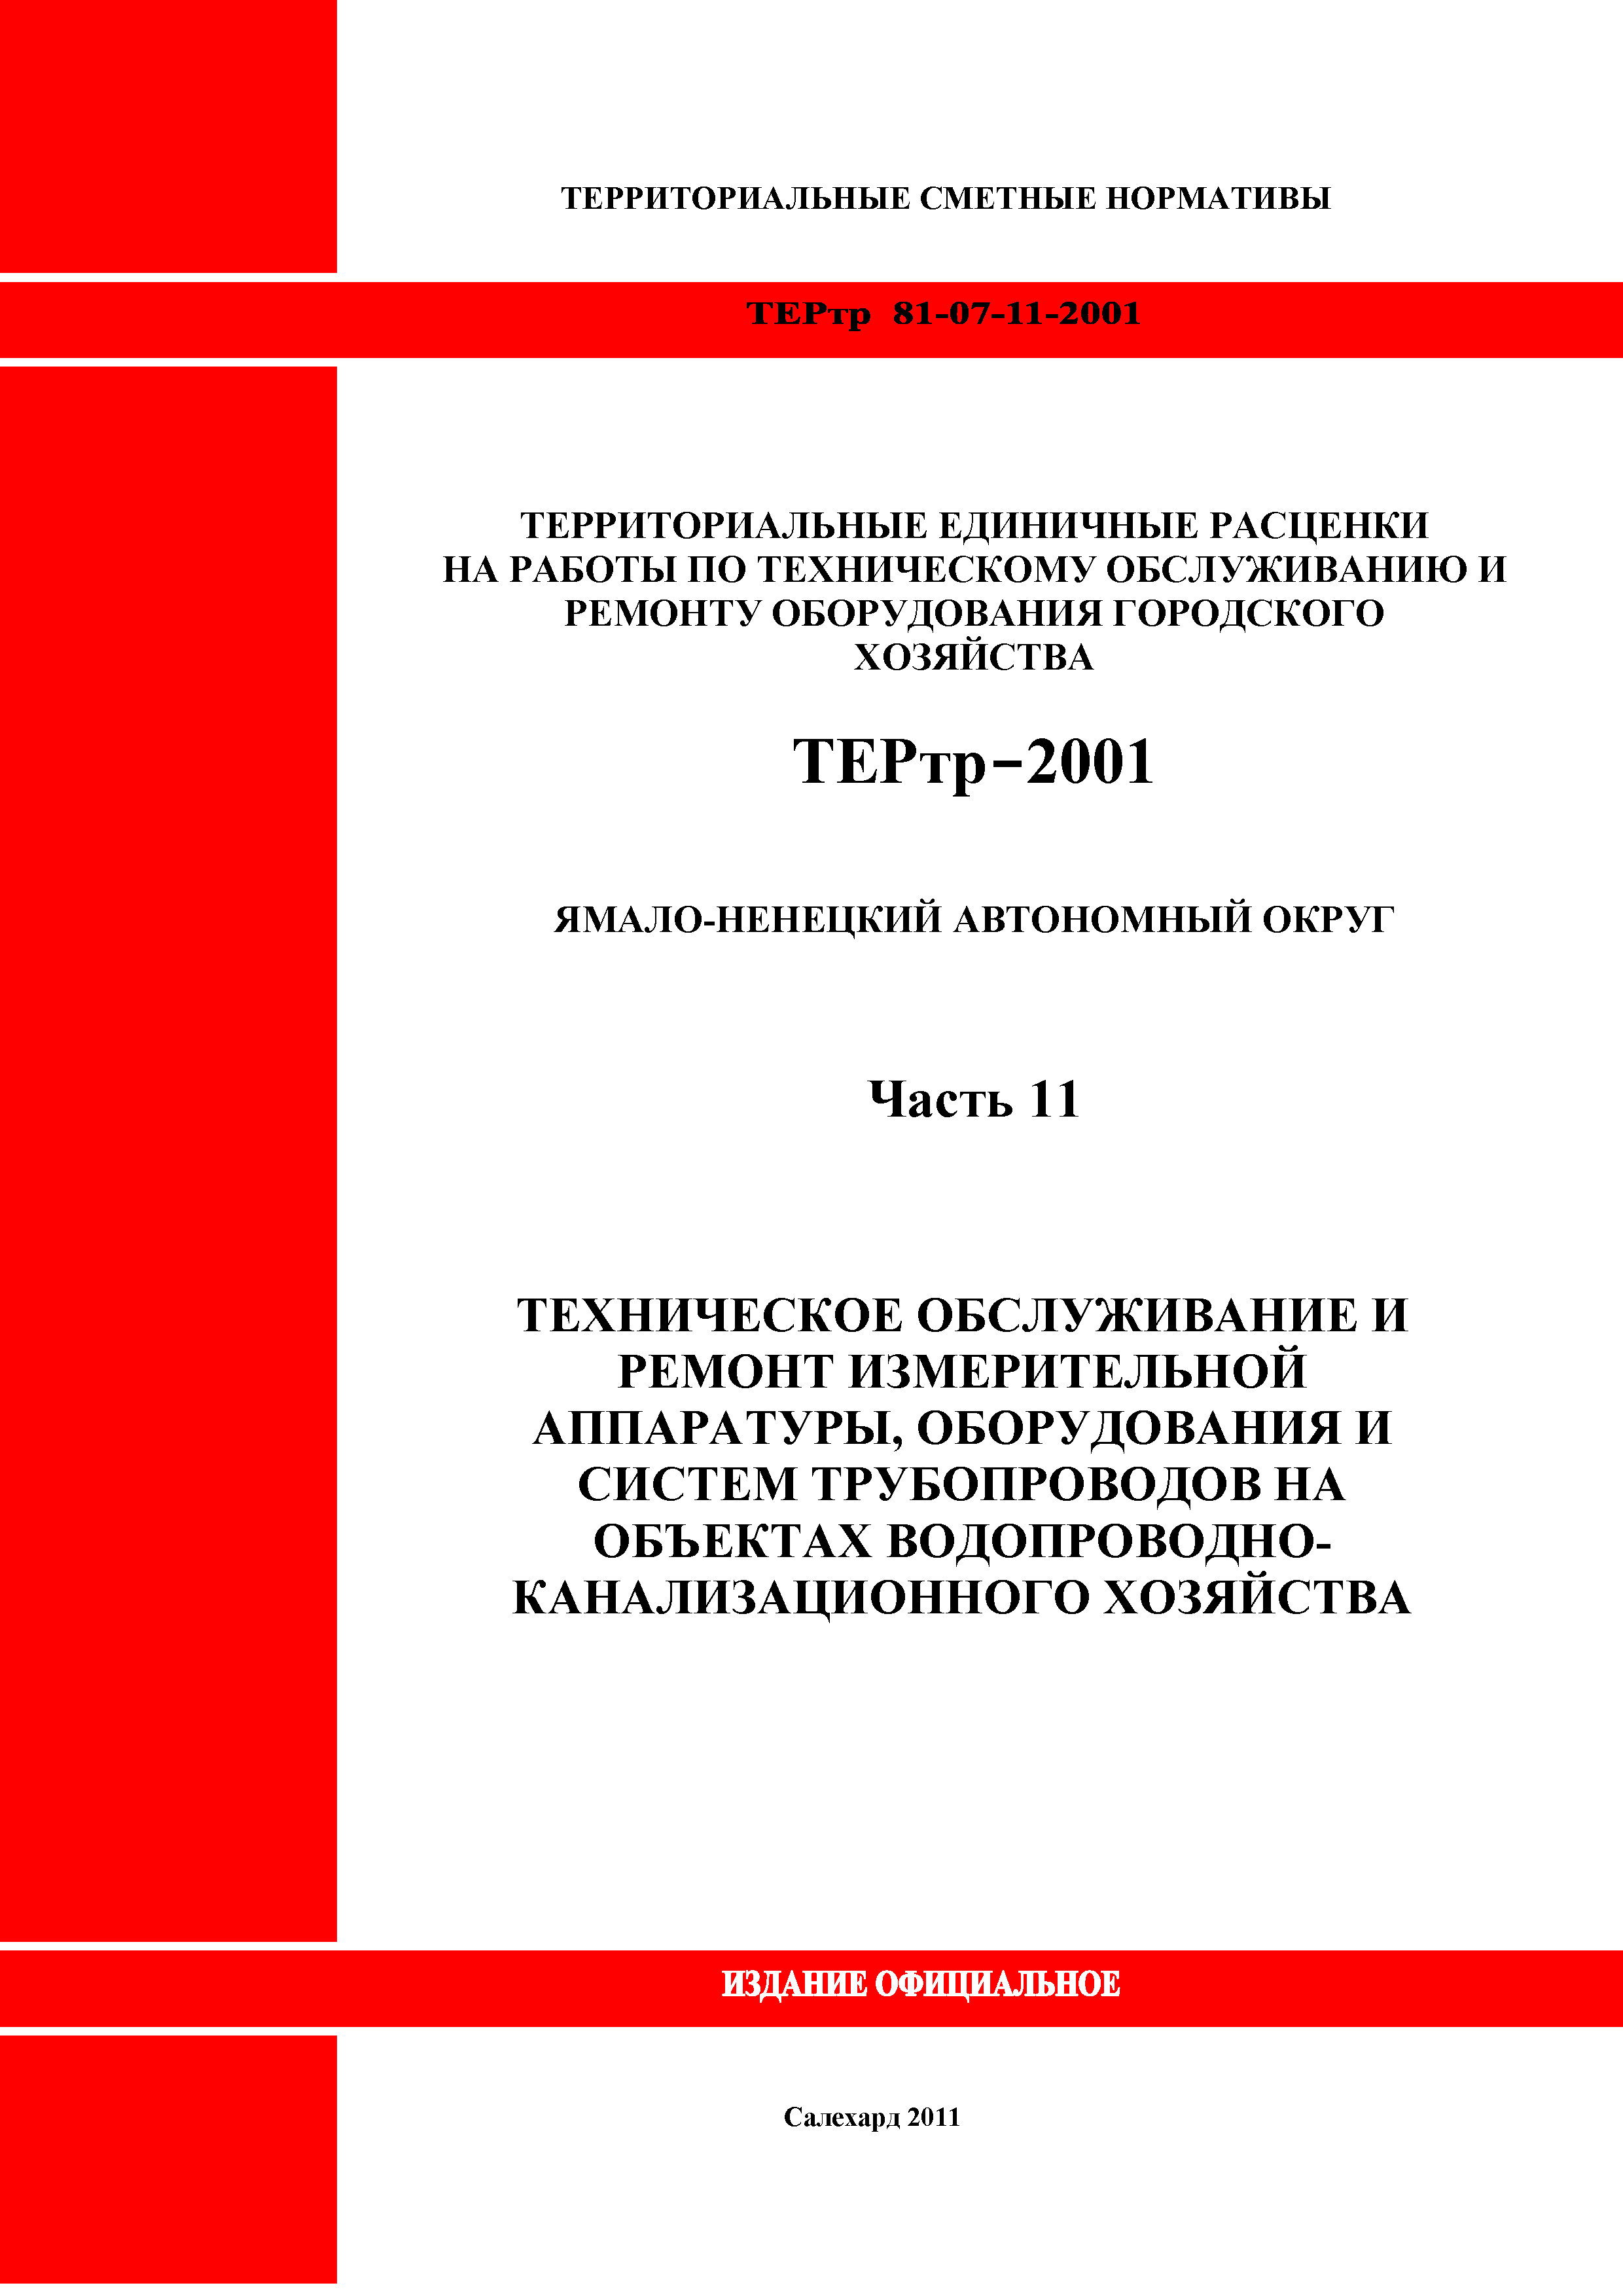 ТЕРтр Ямало-Ненецкий автономный округ 11-2001